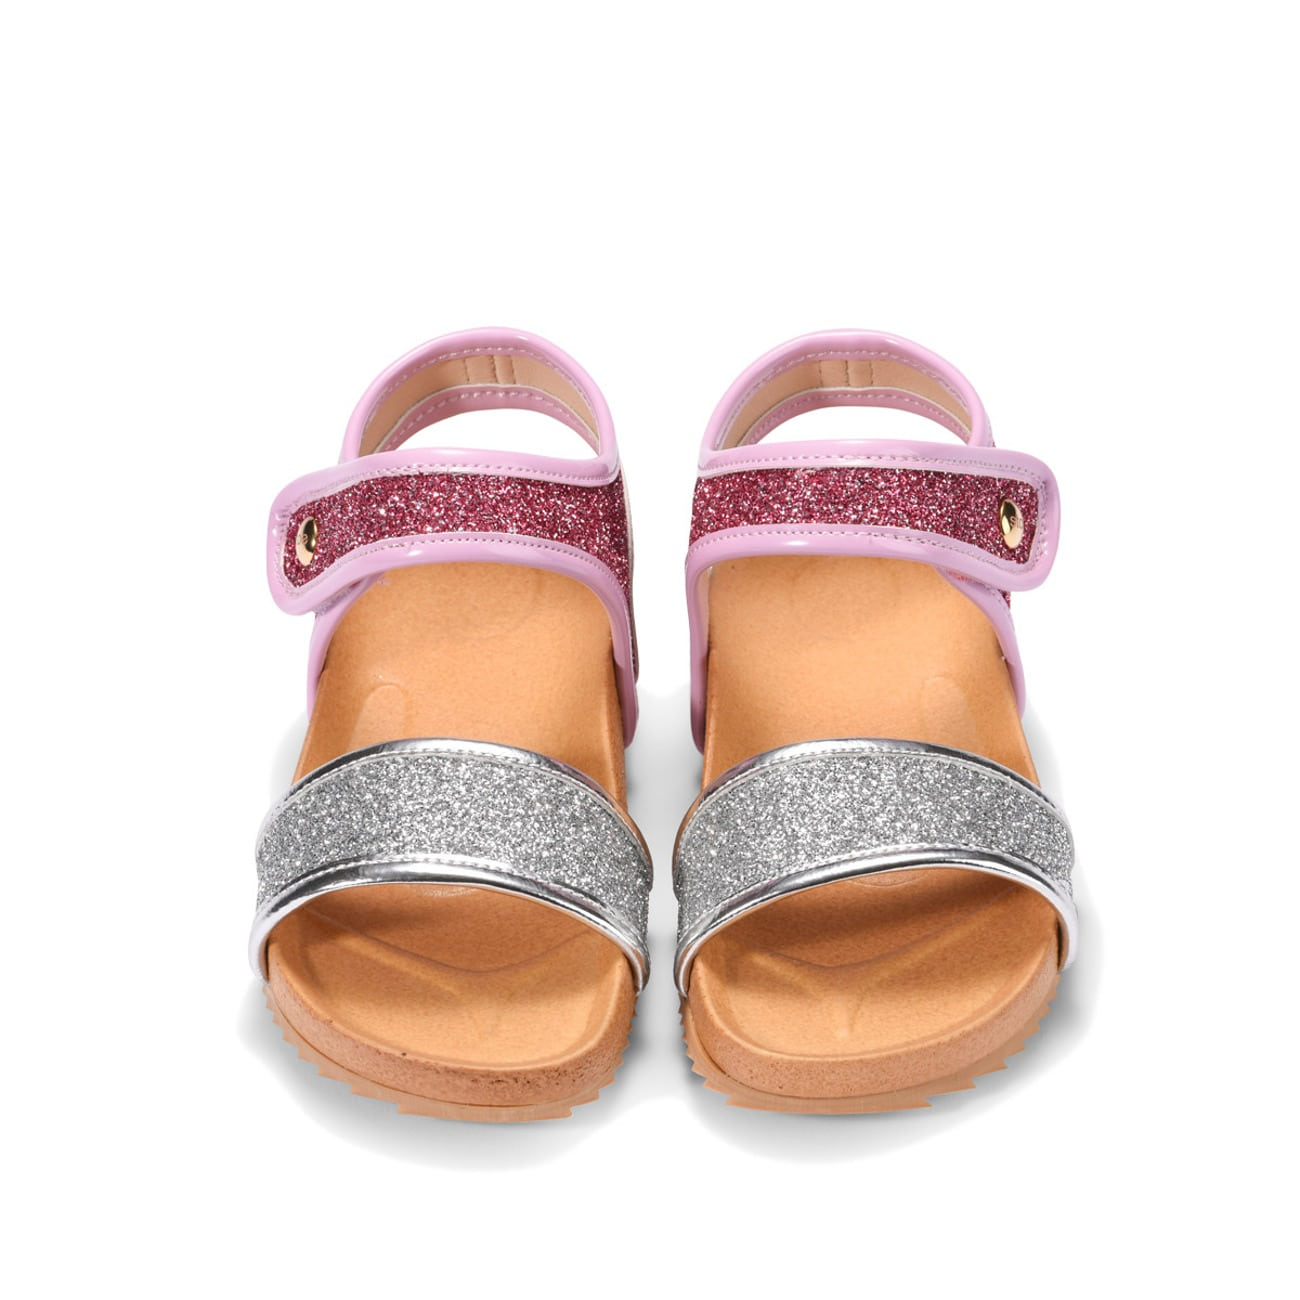 [스토] 키즈 디스코 샌들_pink&amp;silver (150,160,170)